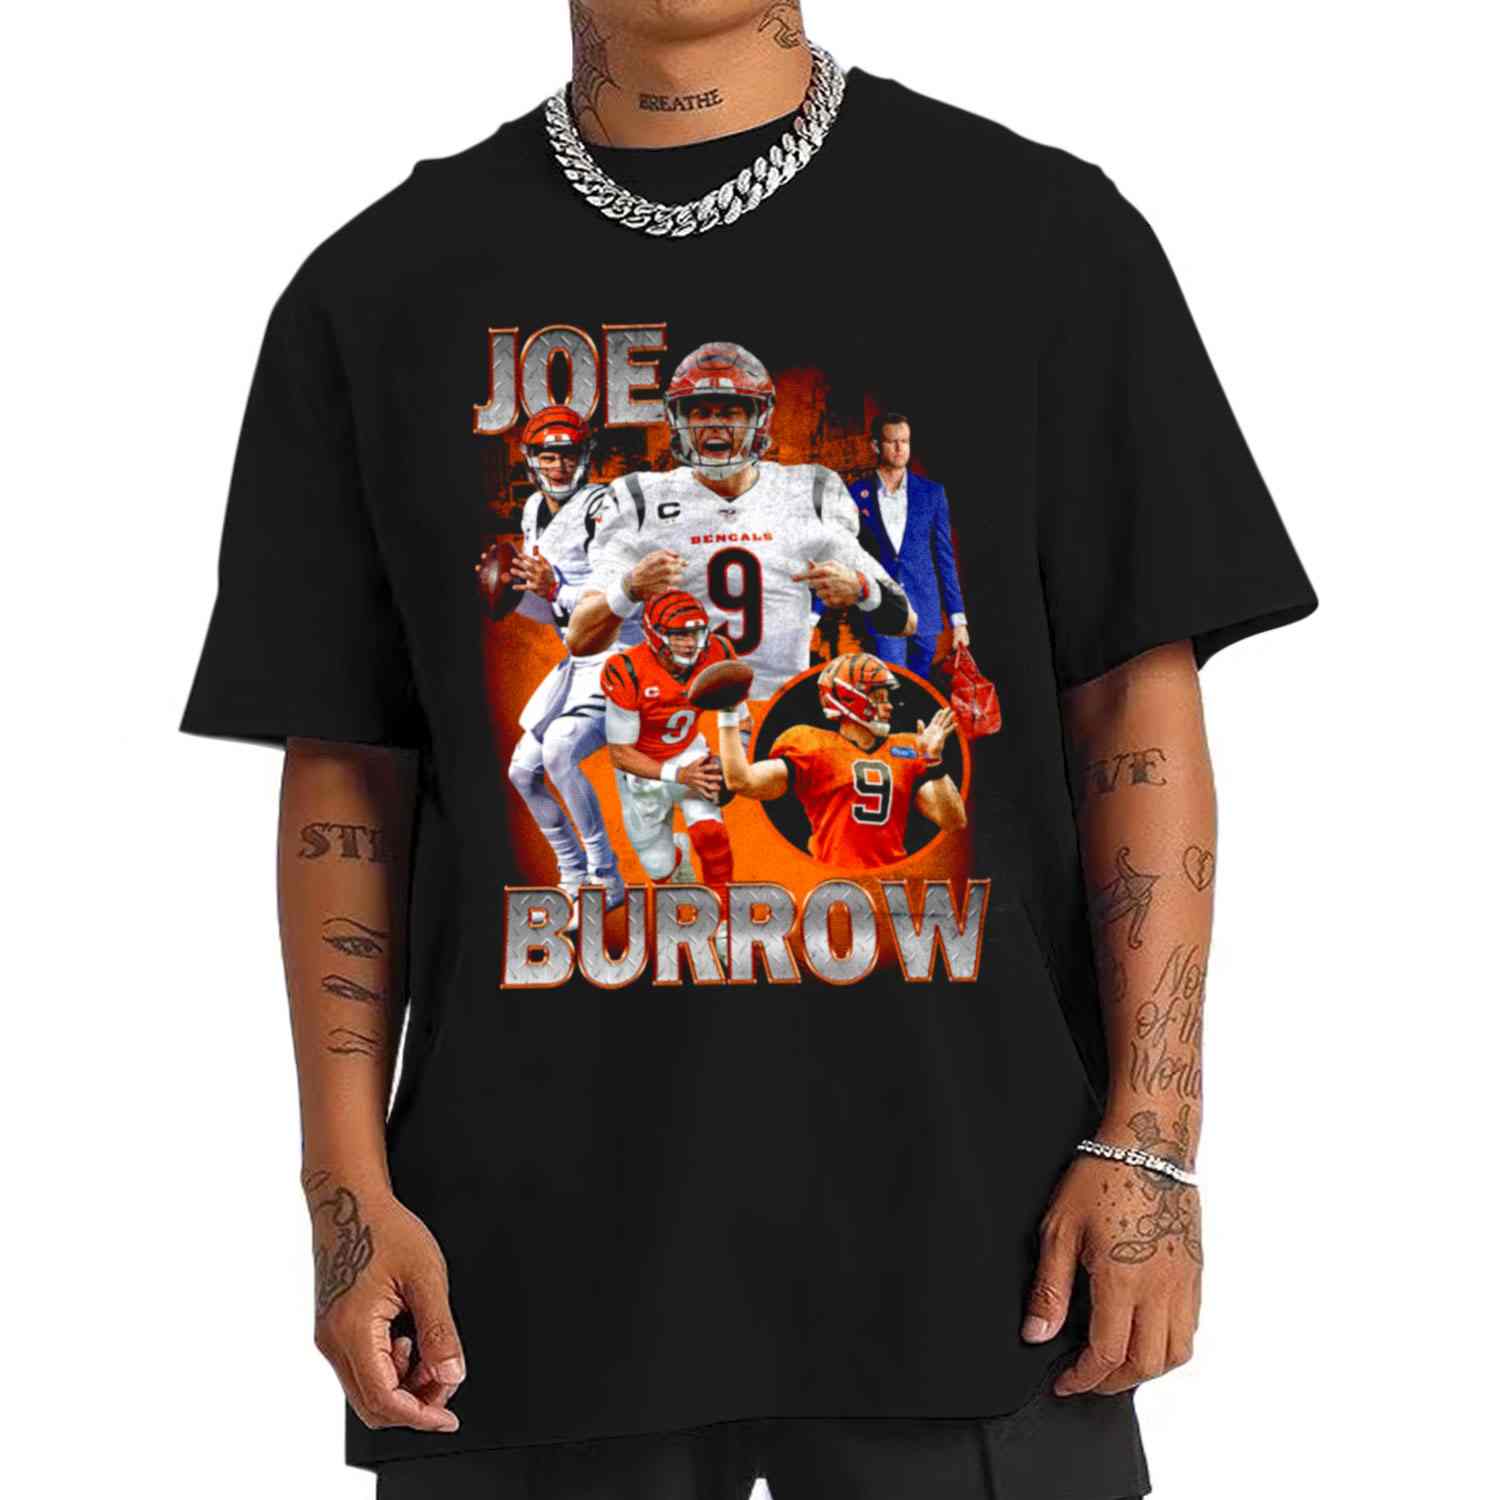 joe burrow is hot shirt